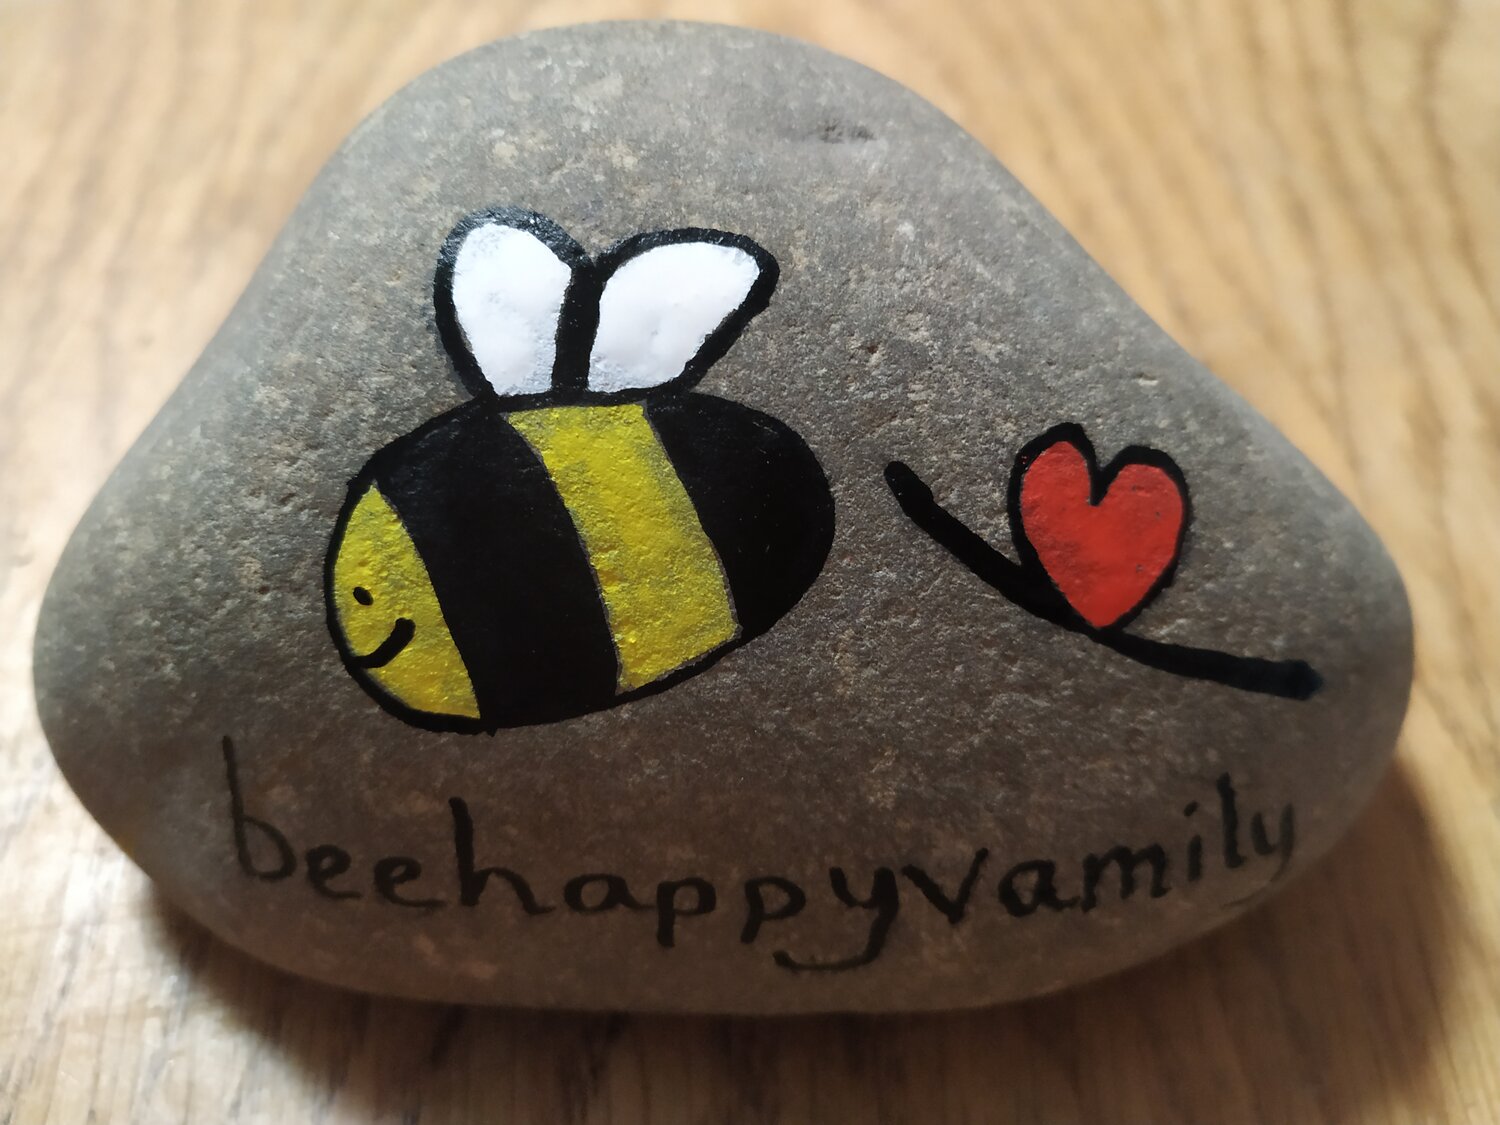 bee happy vamily